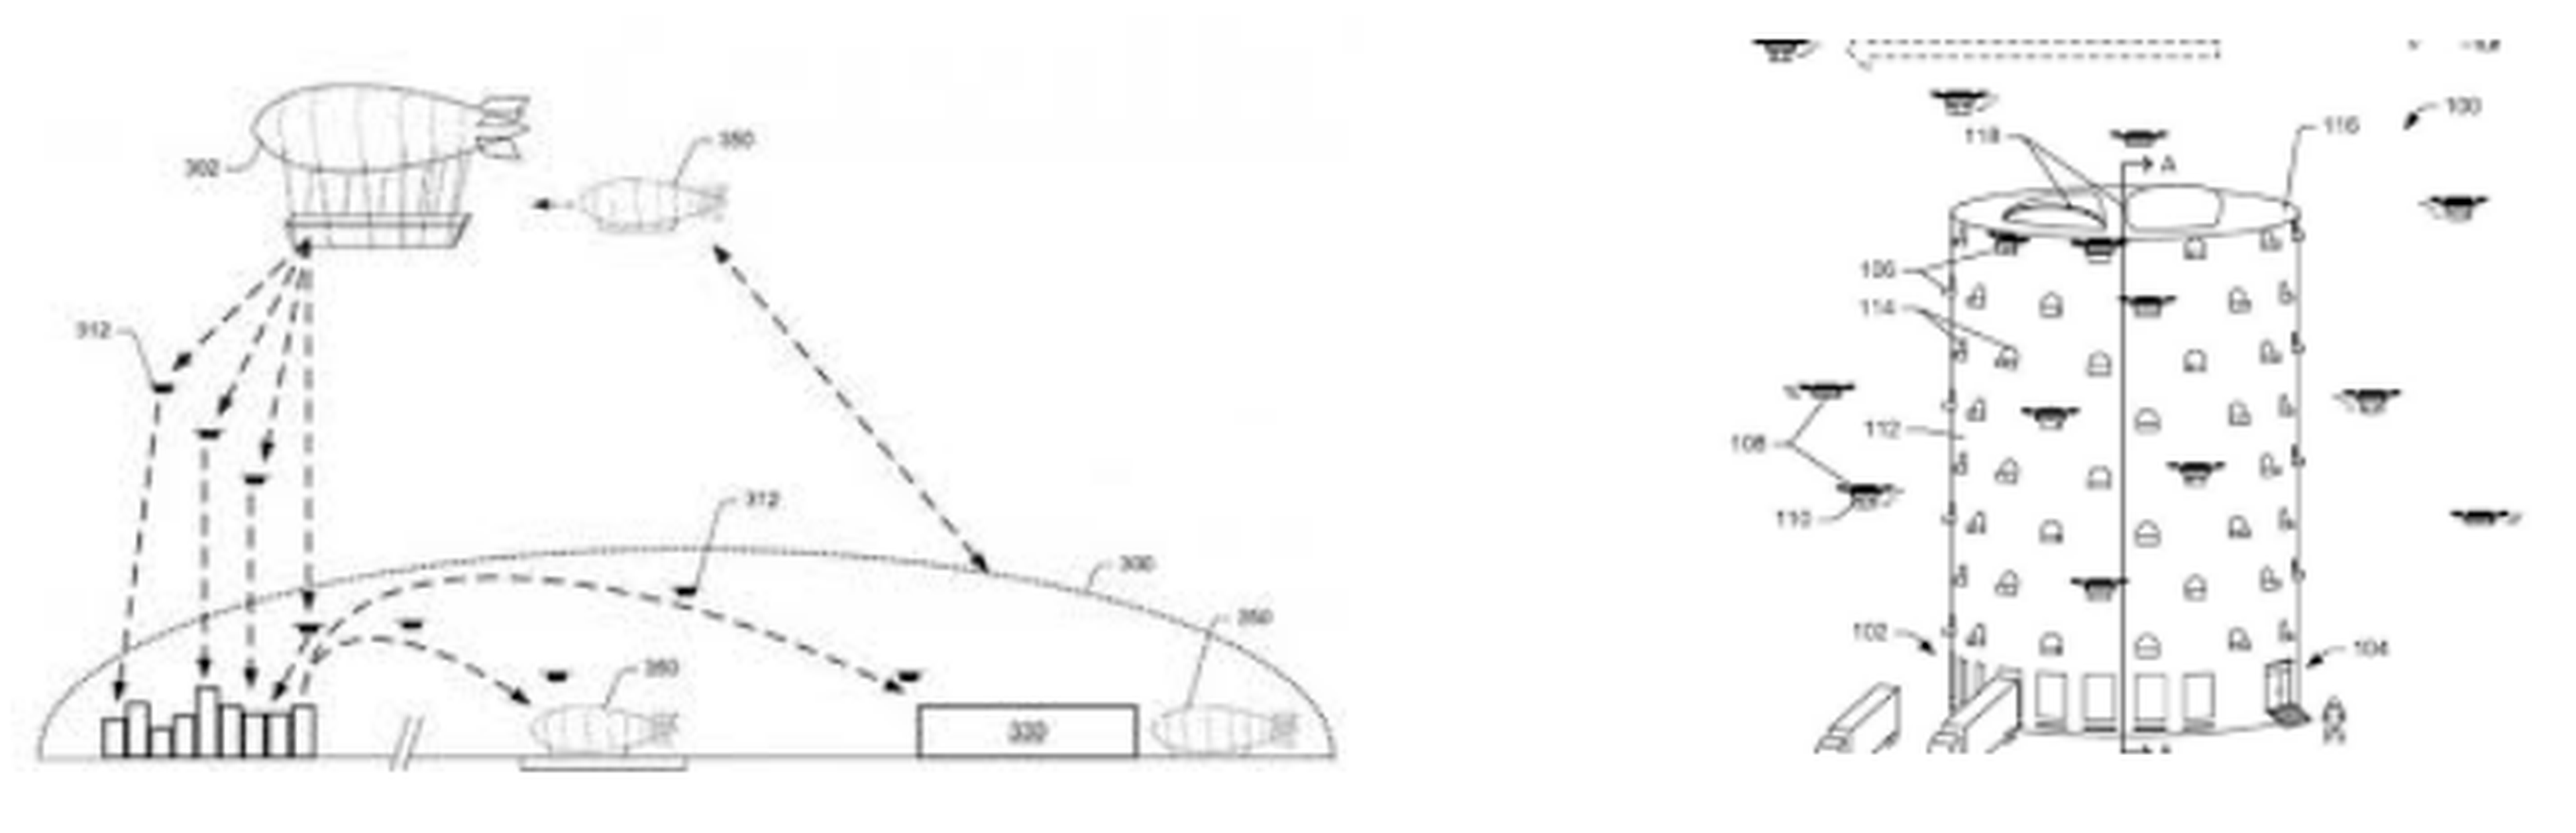 Drones patentes Amazon